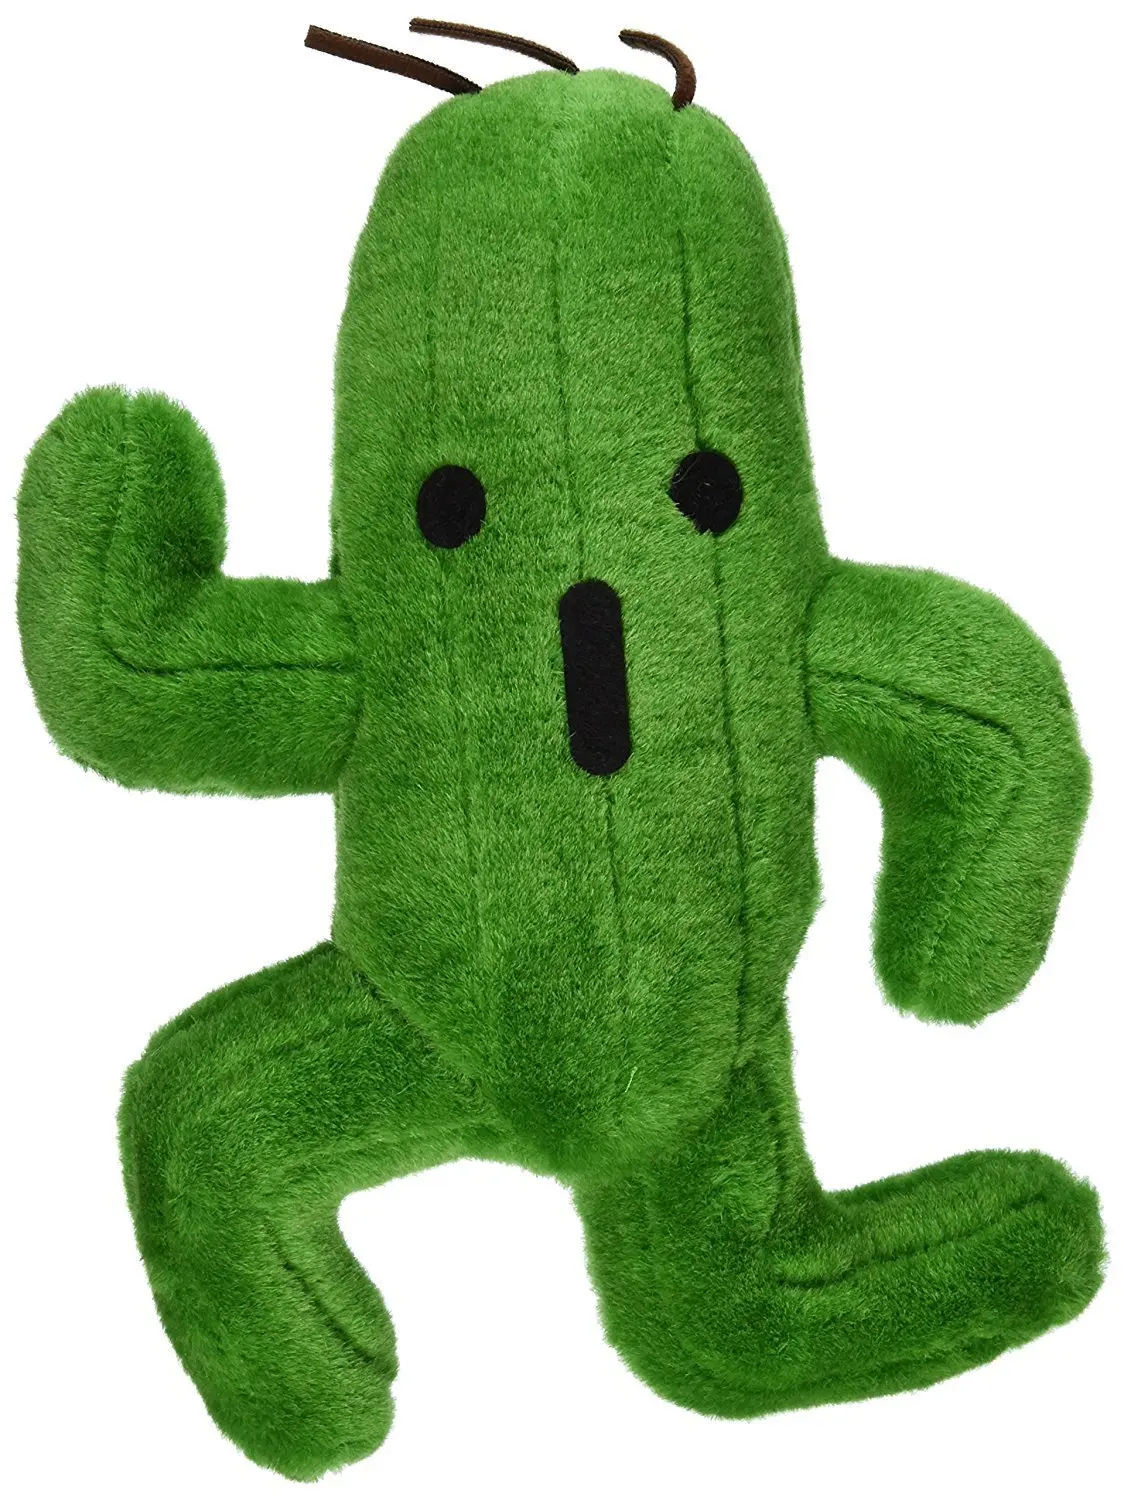 Fantasy FF Cactus Moogle peluche farcito morbido adulto bambini Kawaii Brithday regali 15/25cm